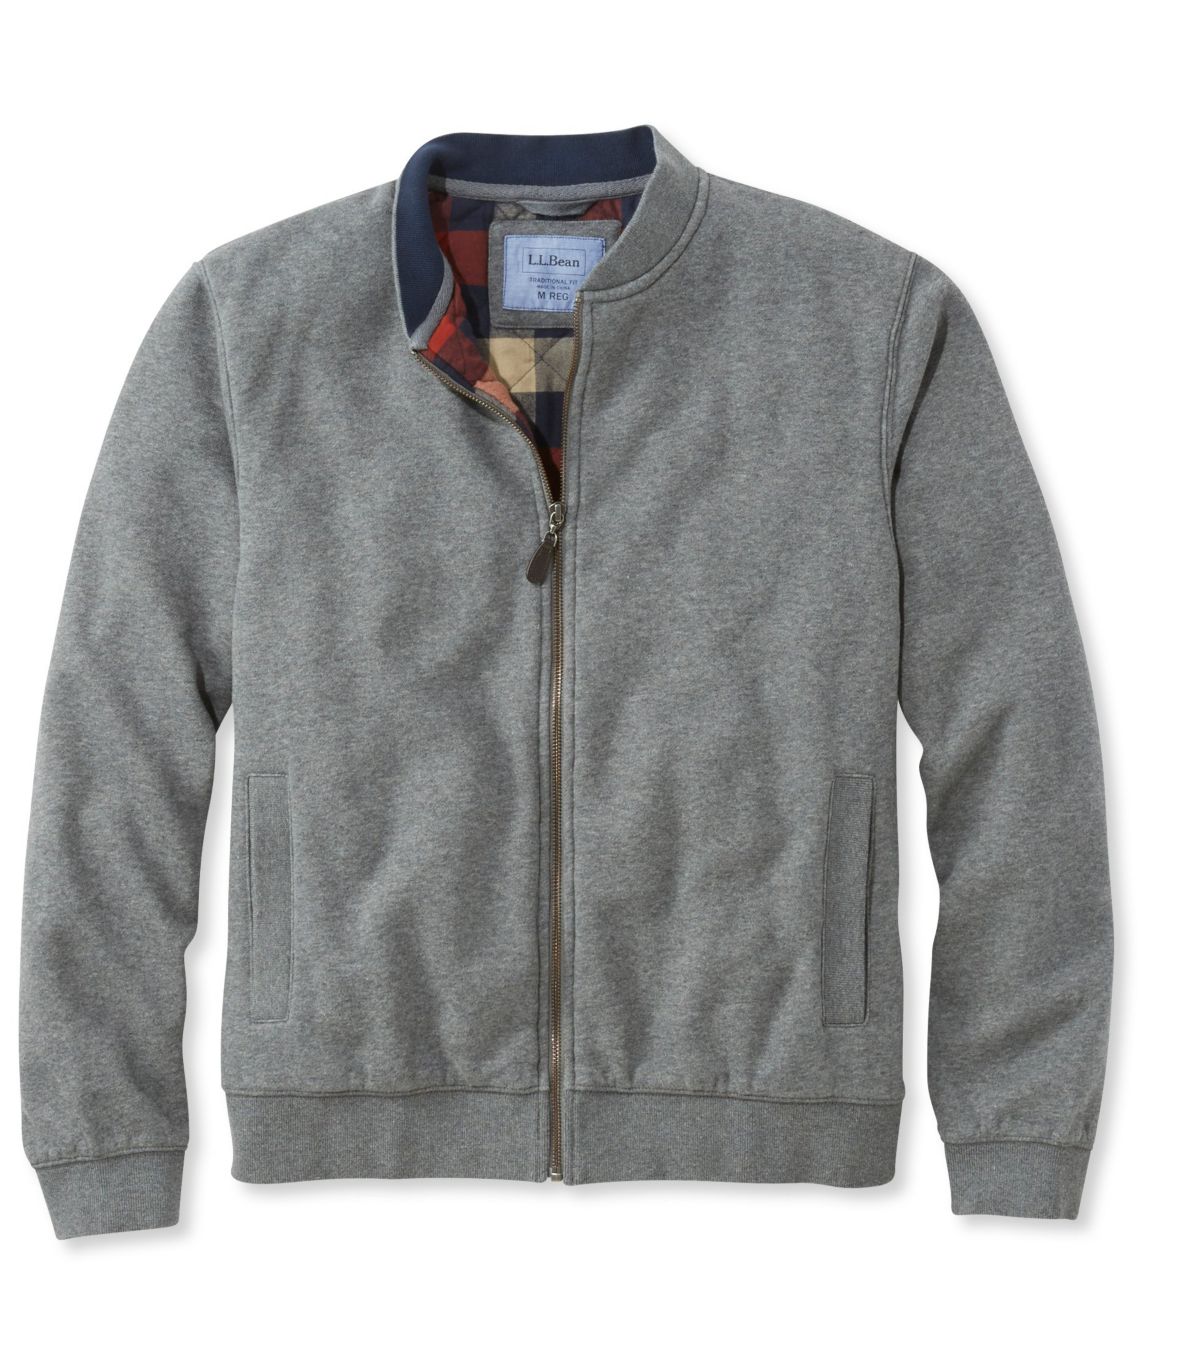 Men's Flannel-Lined Full-Zip Sweatshirt